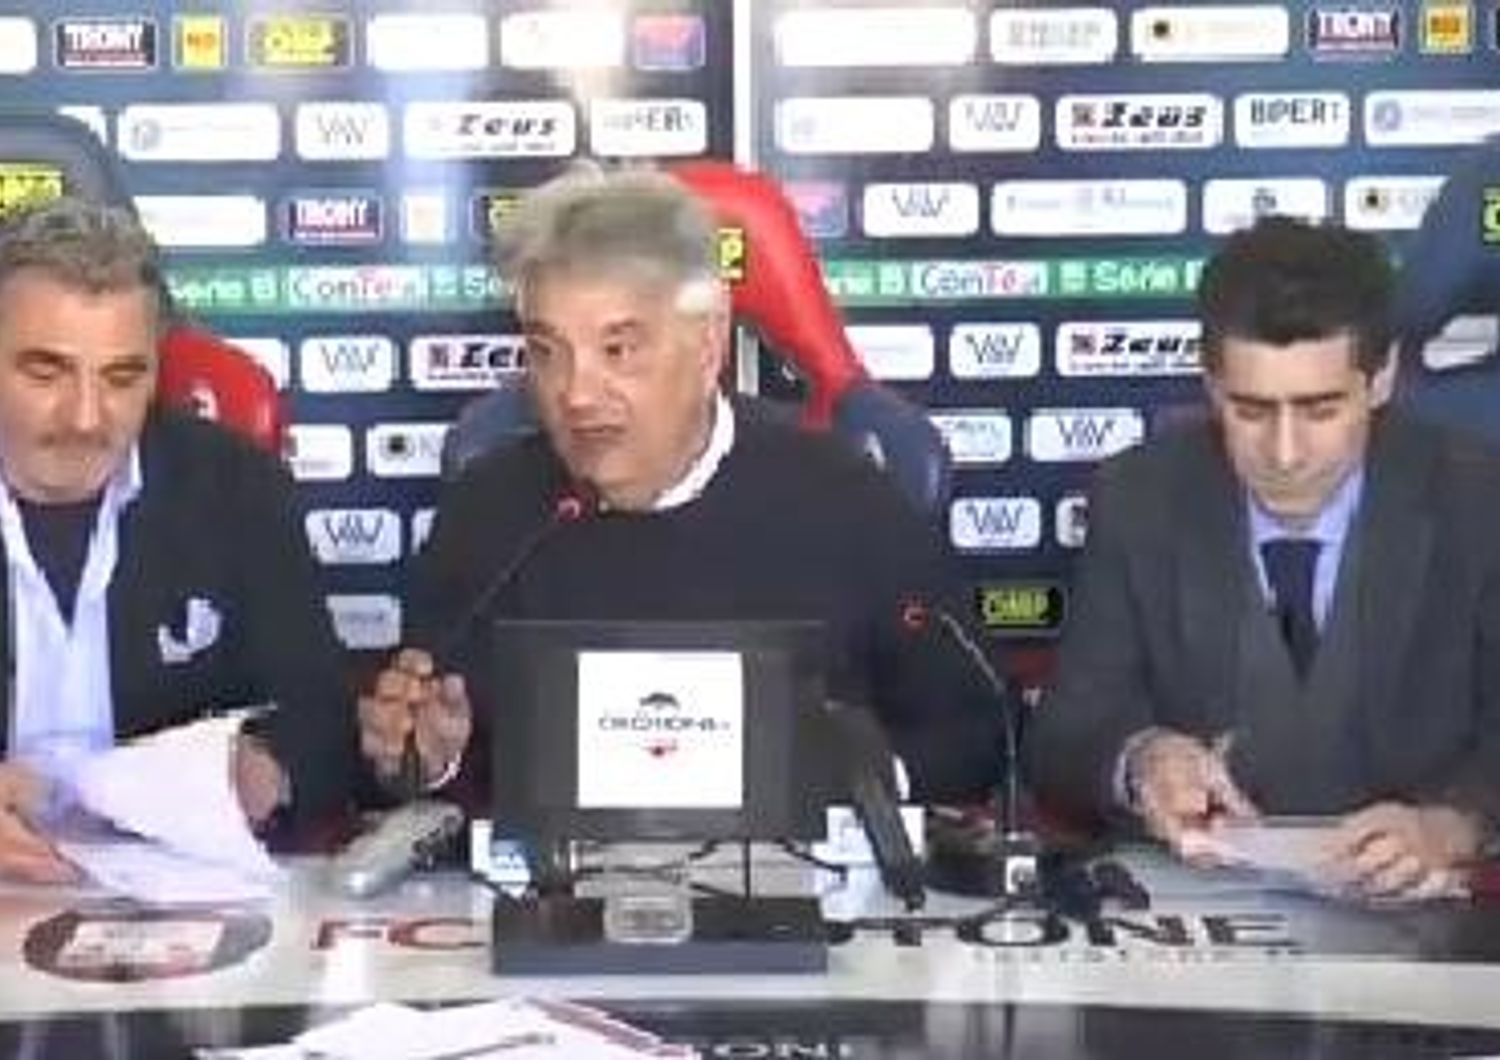 &nbsp;Conferenza stampa Crotone calcio (foto video da fb)